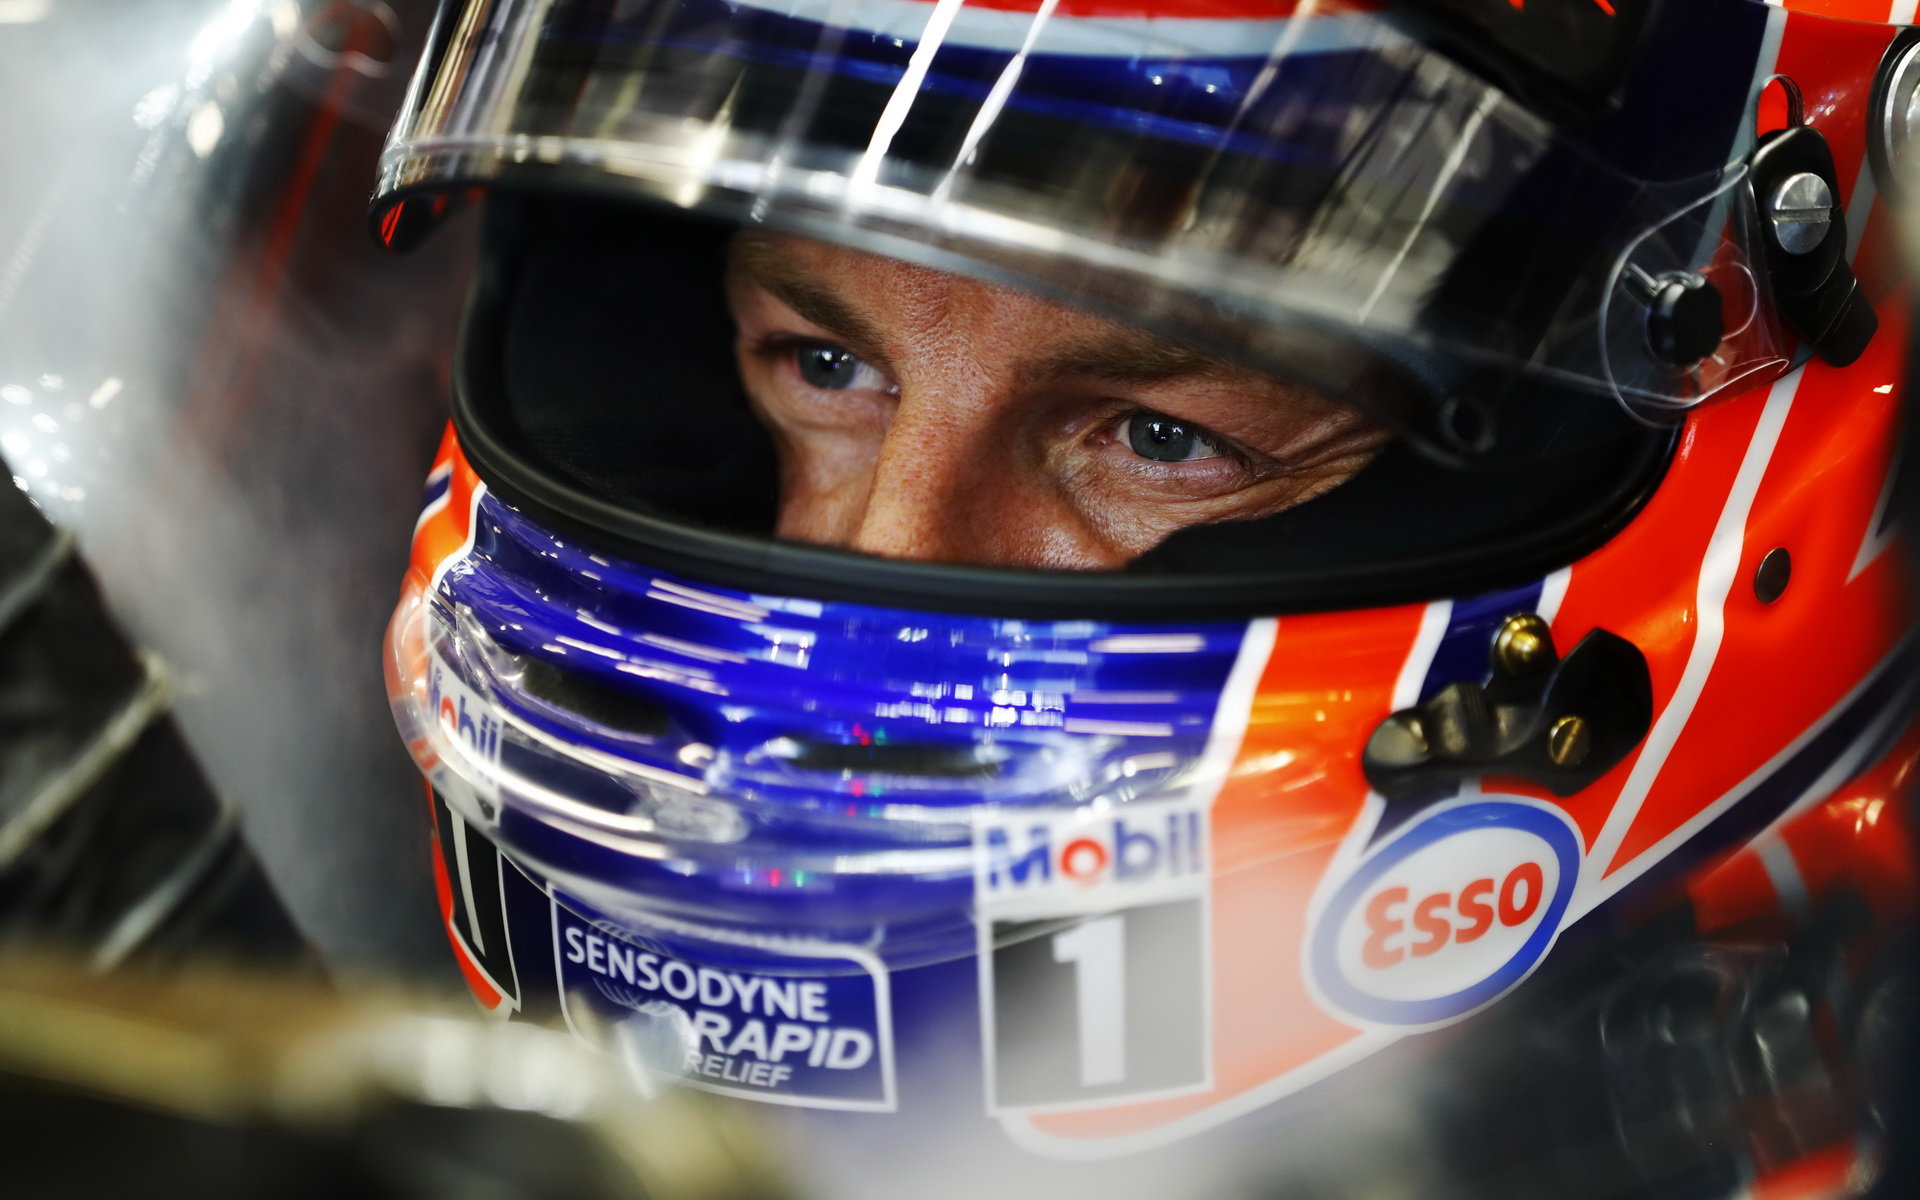 Jenson Button v kvalifikaci v Singapuru